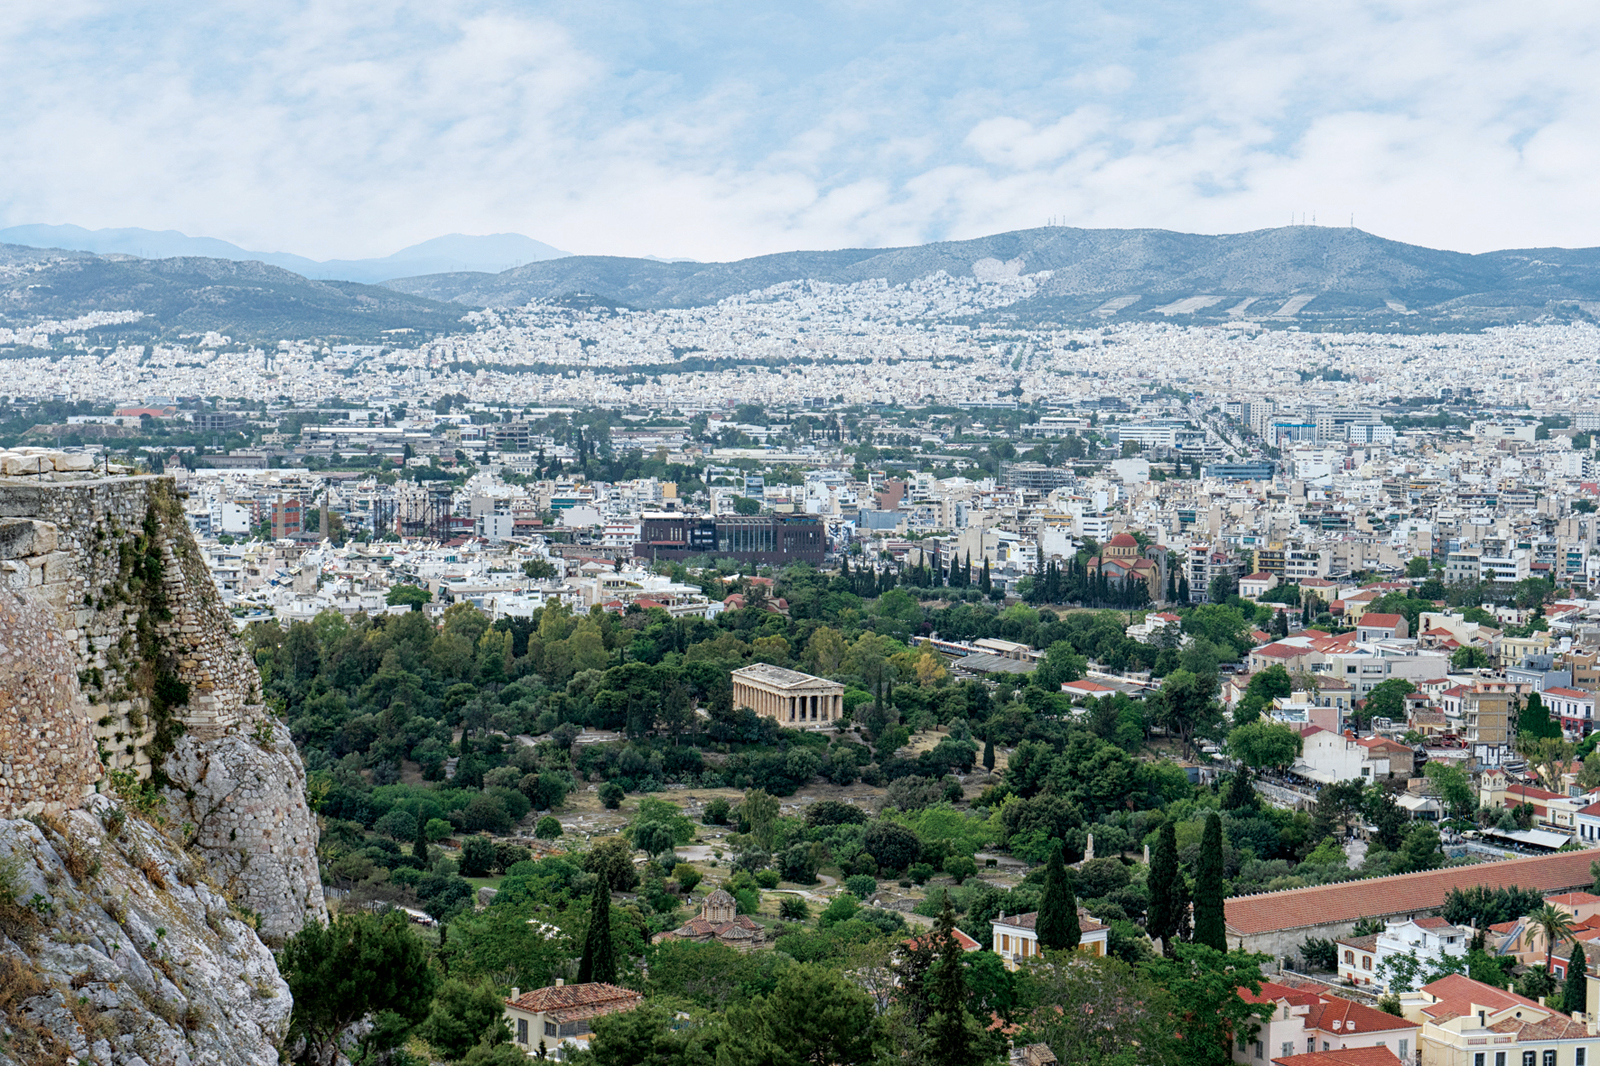 Athens Ancient Agora & the Agora Museum Tour